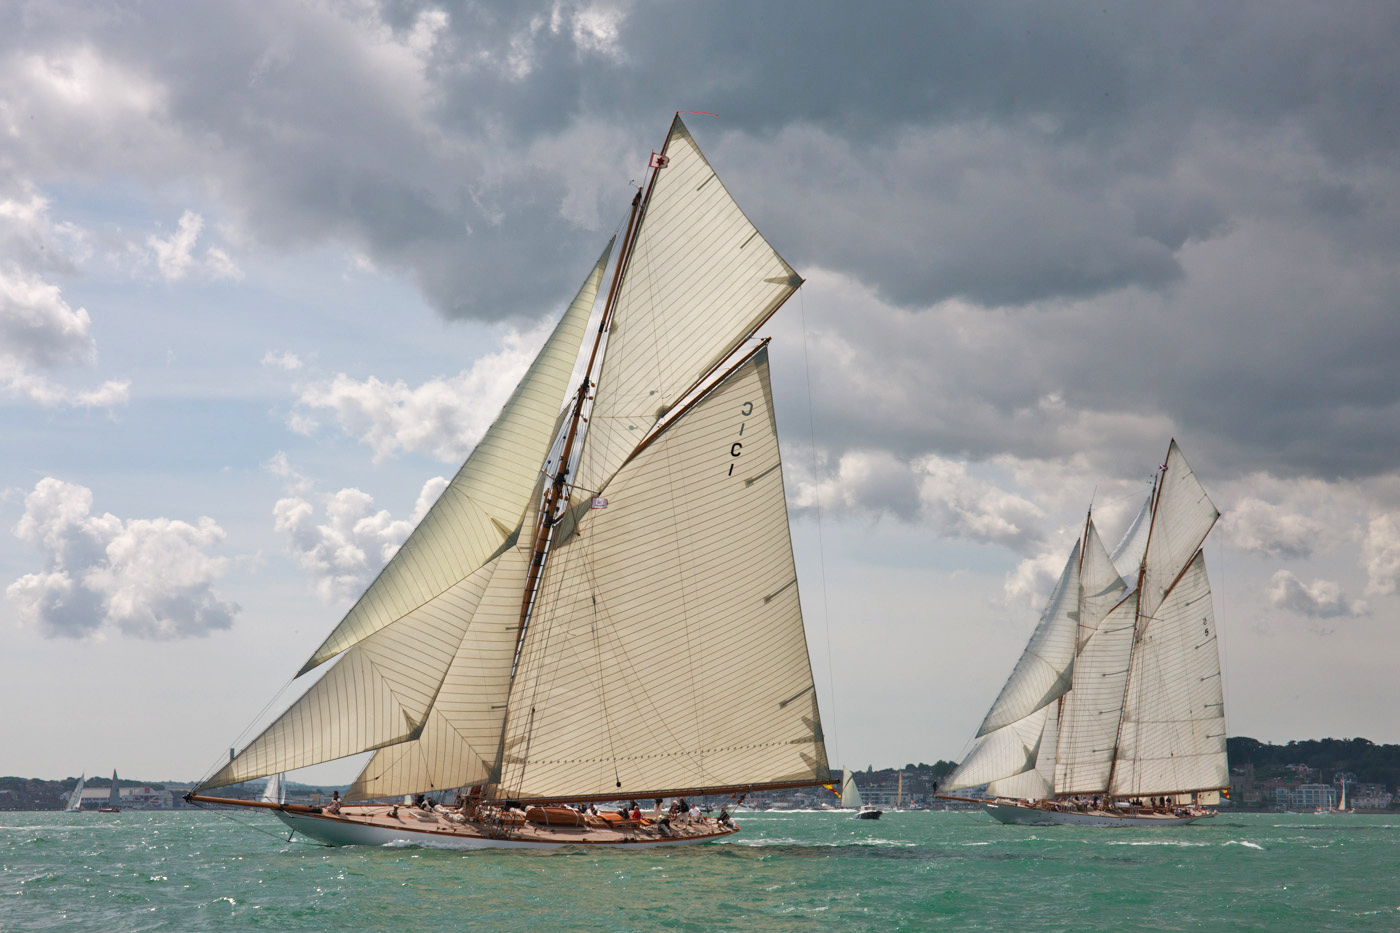 Classic sailing yachts Mariquita v Eleonora match race - Image courtesy ...